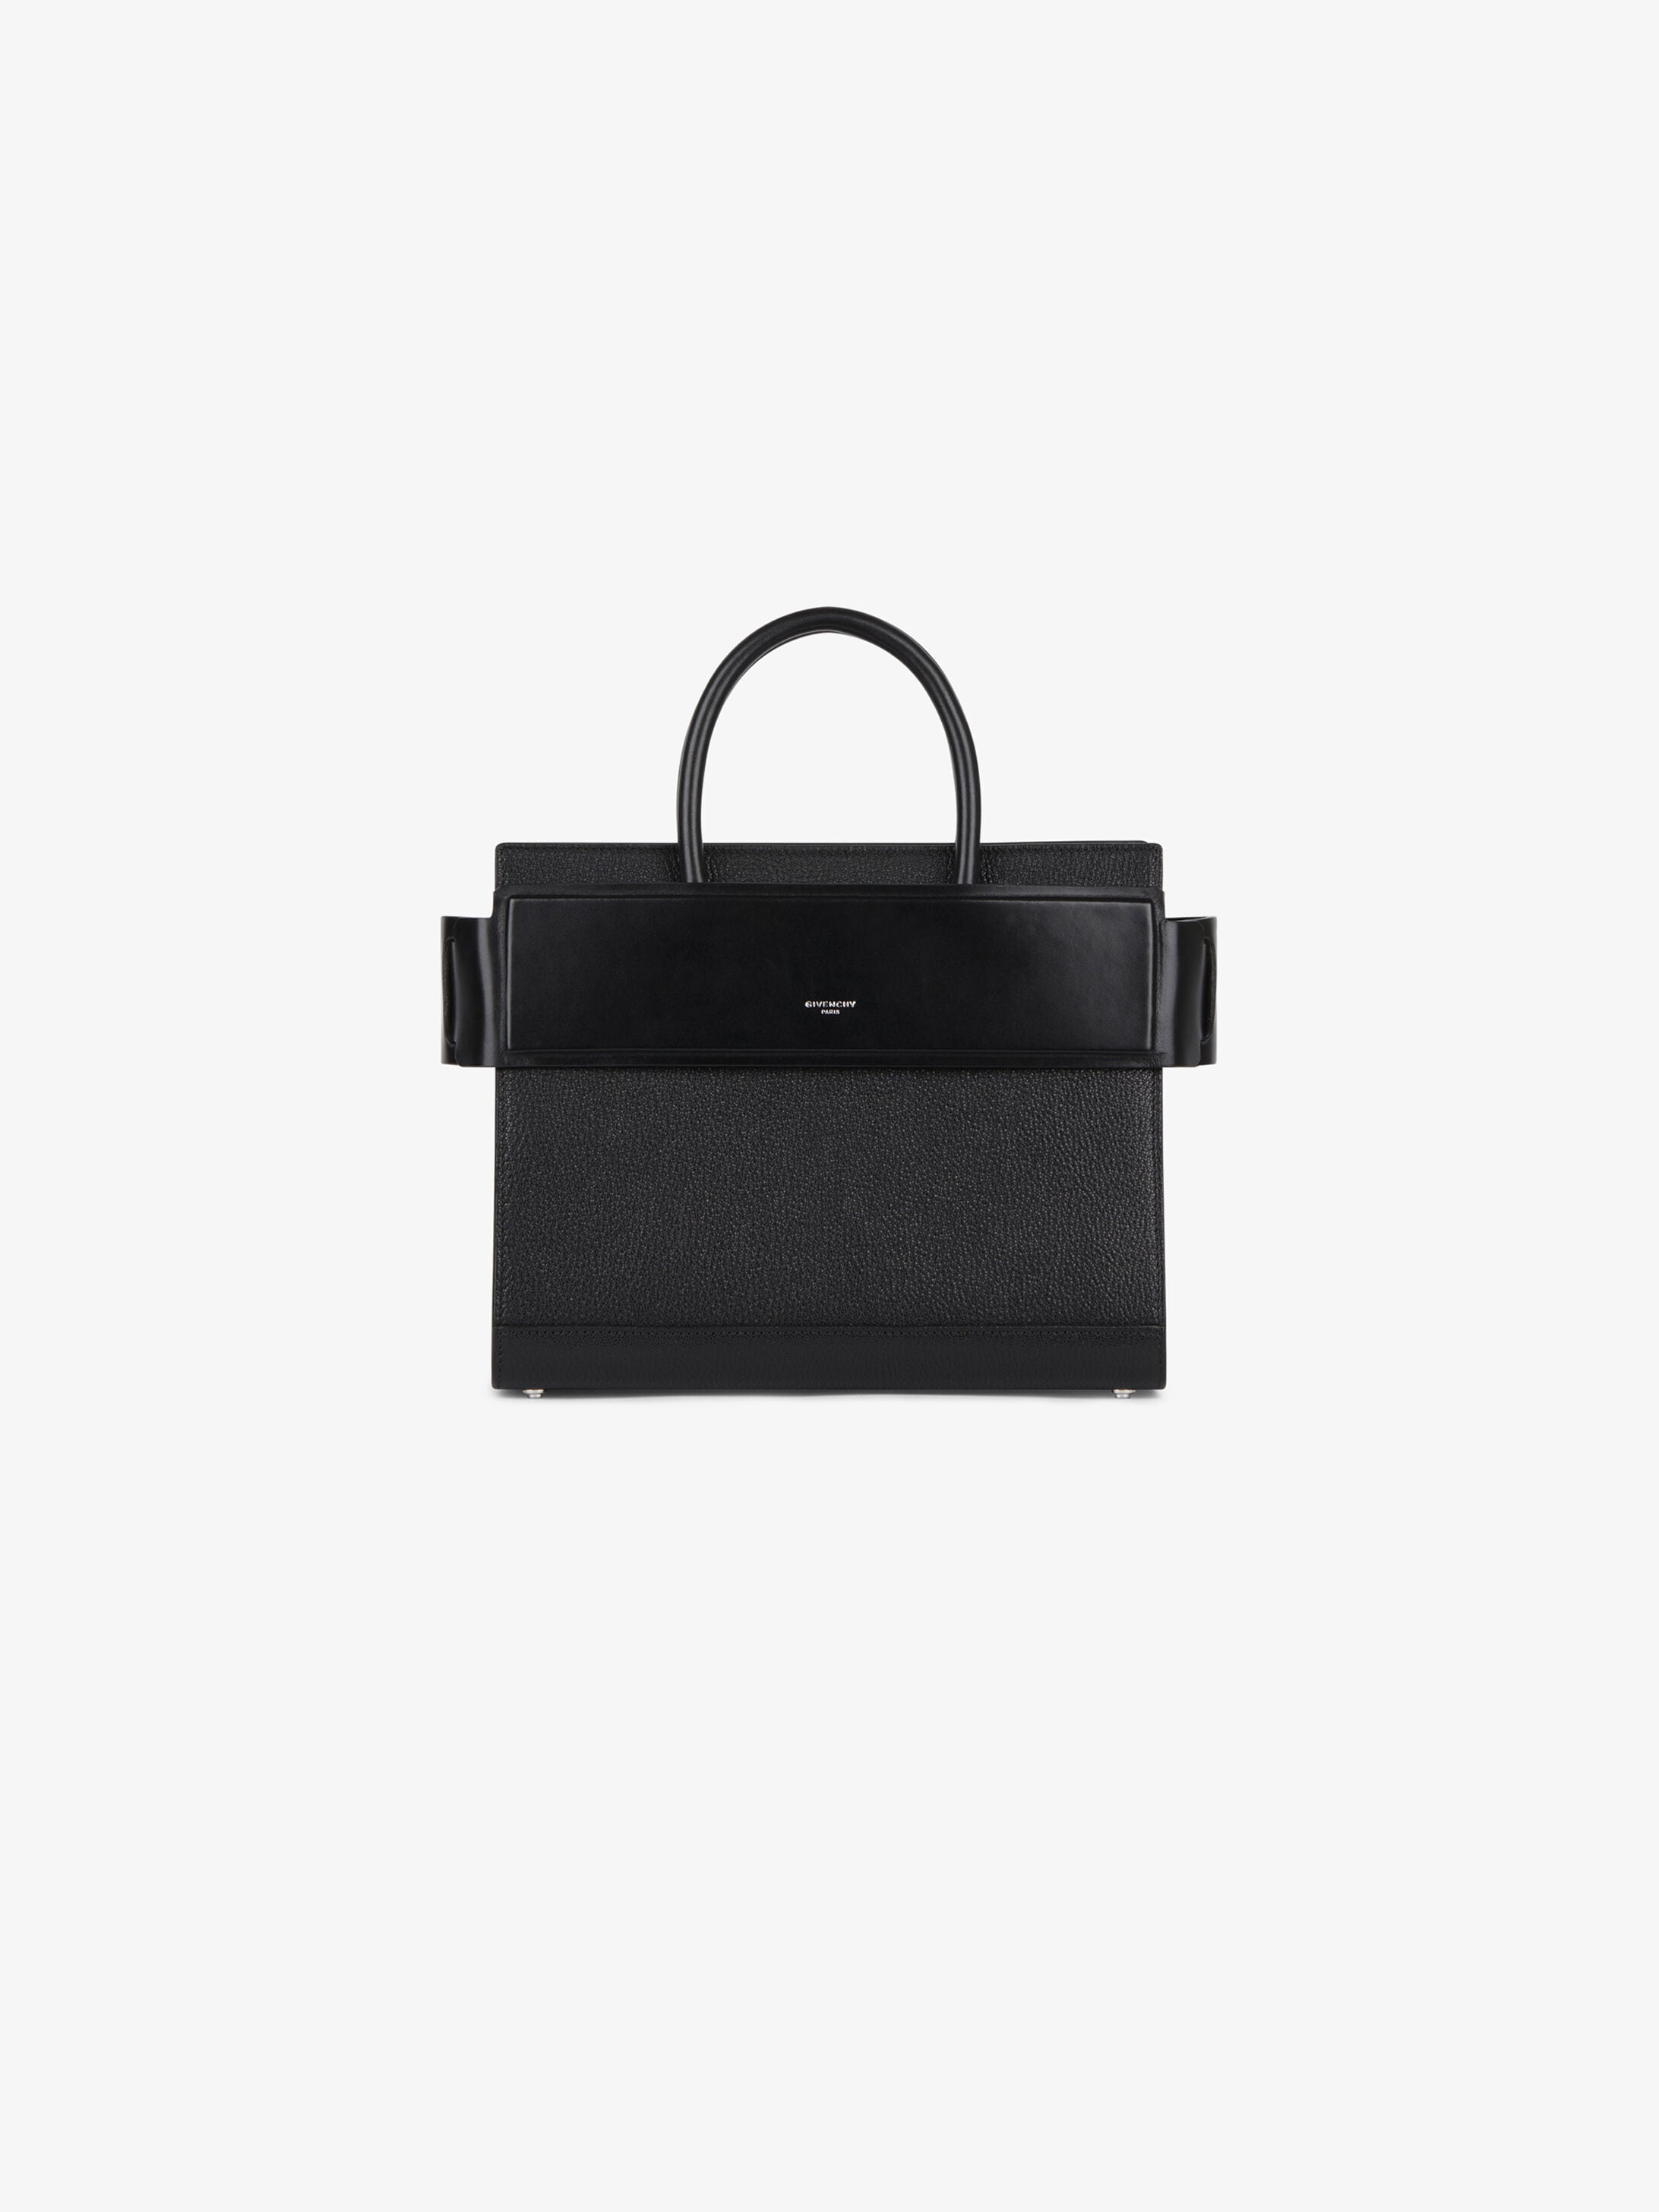 Givenchy Small Horizon bag | GIVENCHY巴黎